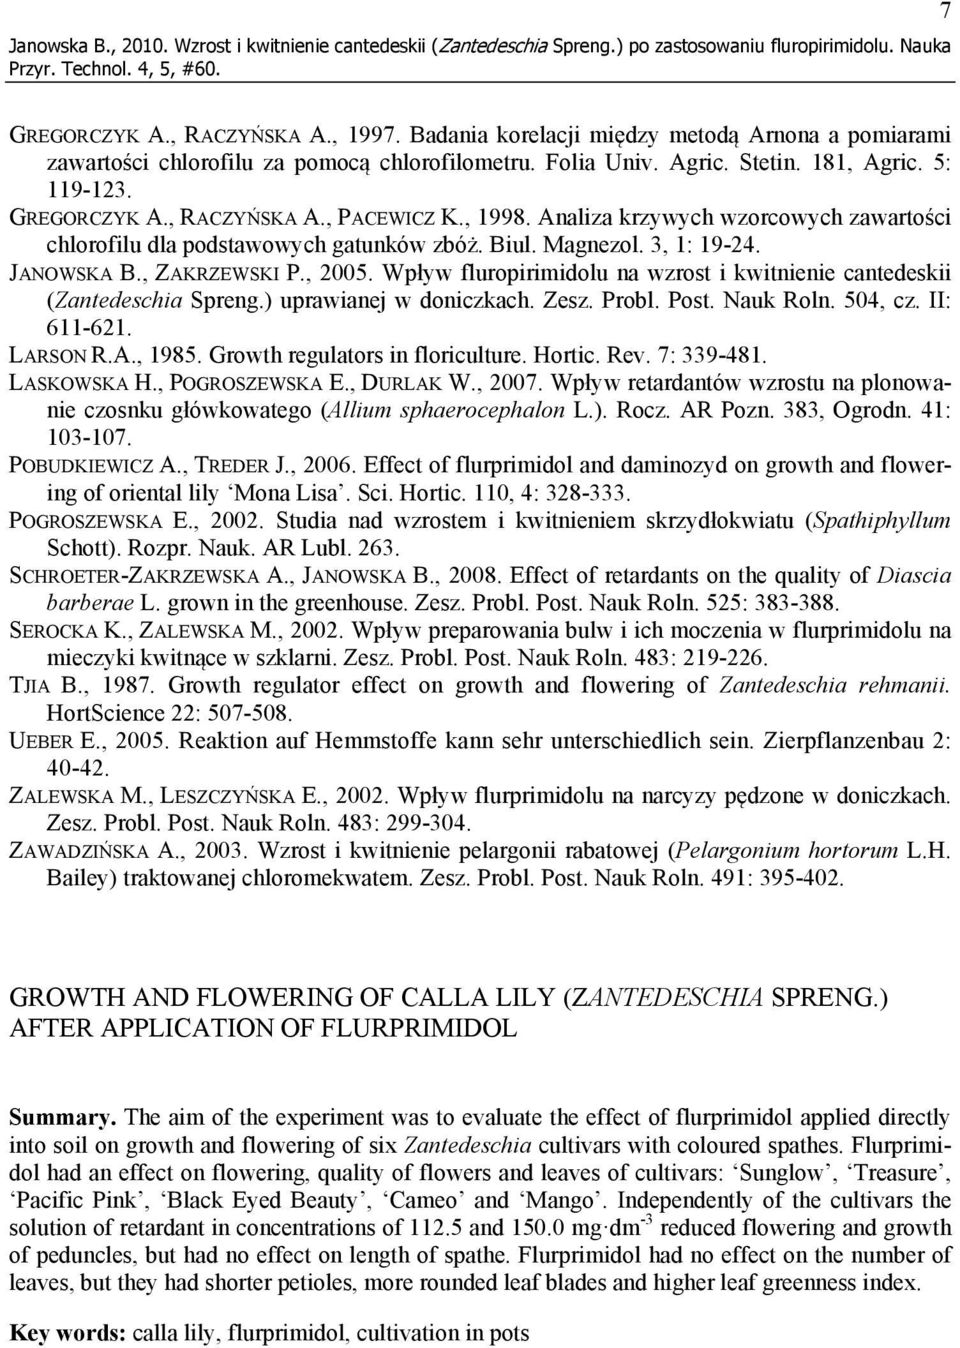 Analiza krzywych wzorcowych zawartości chlorofilu dla podstawowych gatunków zbóż. Biul. Magnezol. 3, 1: 19-24. JANOWSKA B., ZAKRZEWSKI P., 2005.